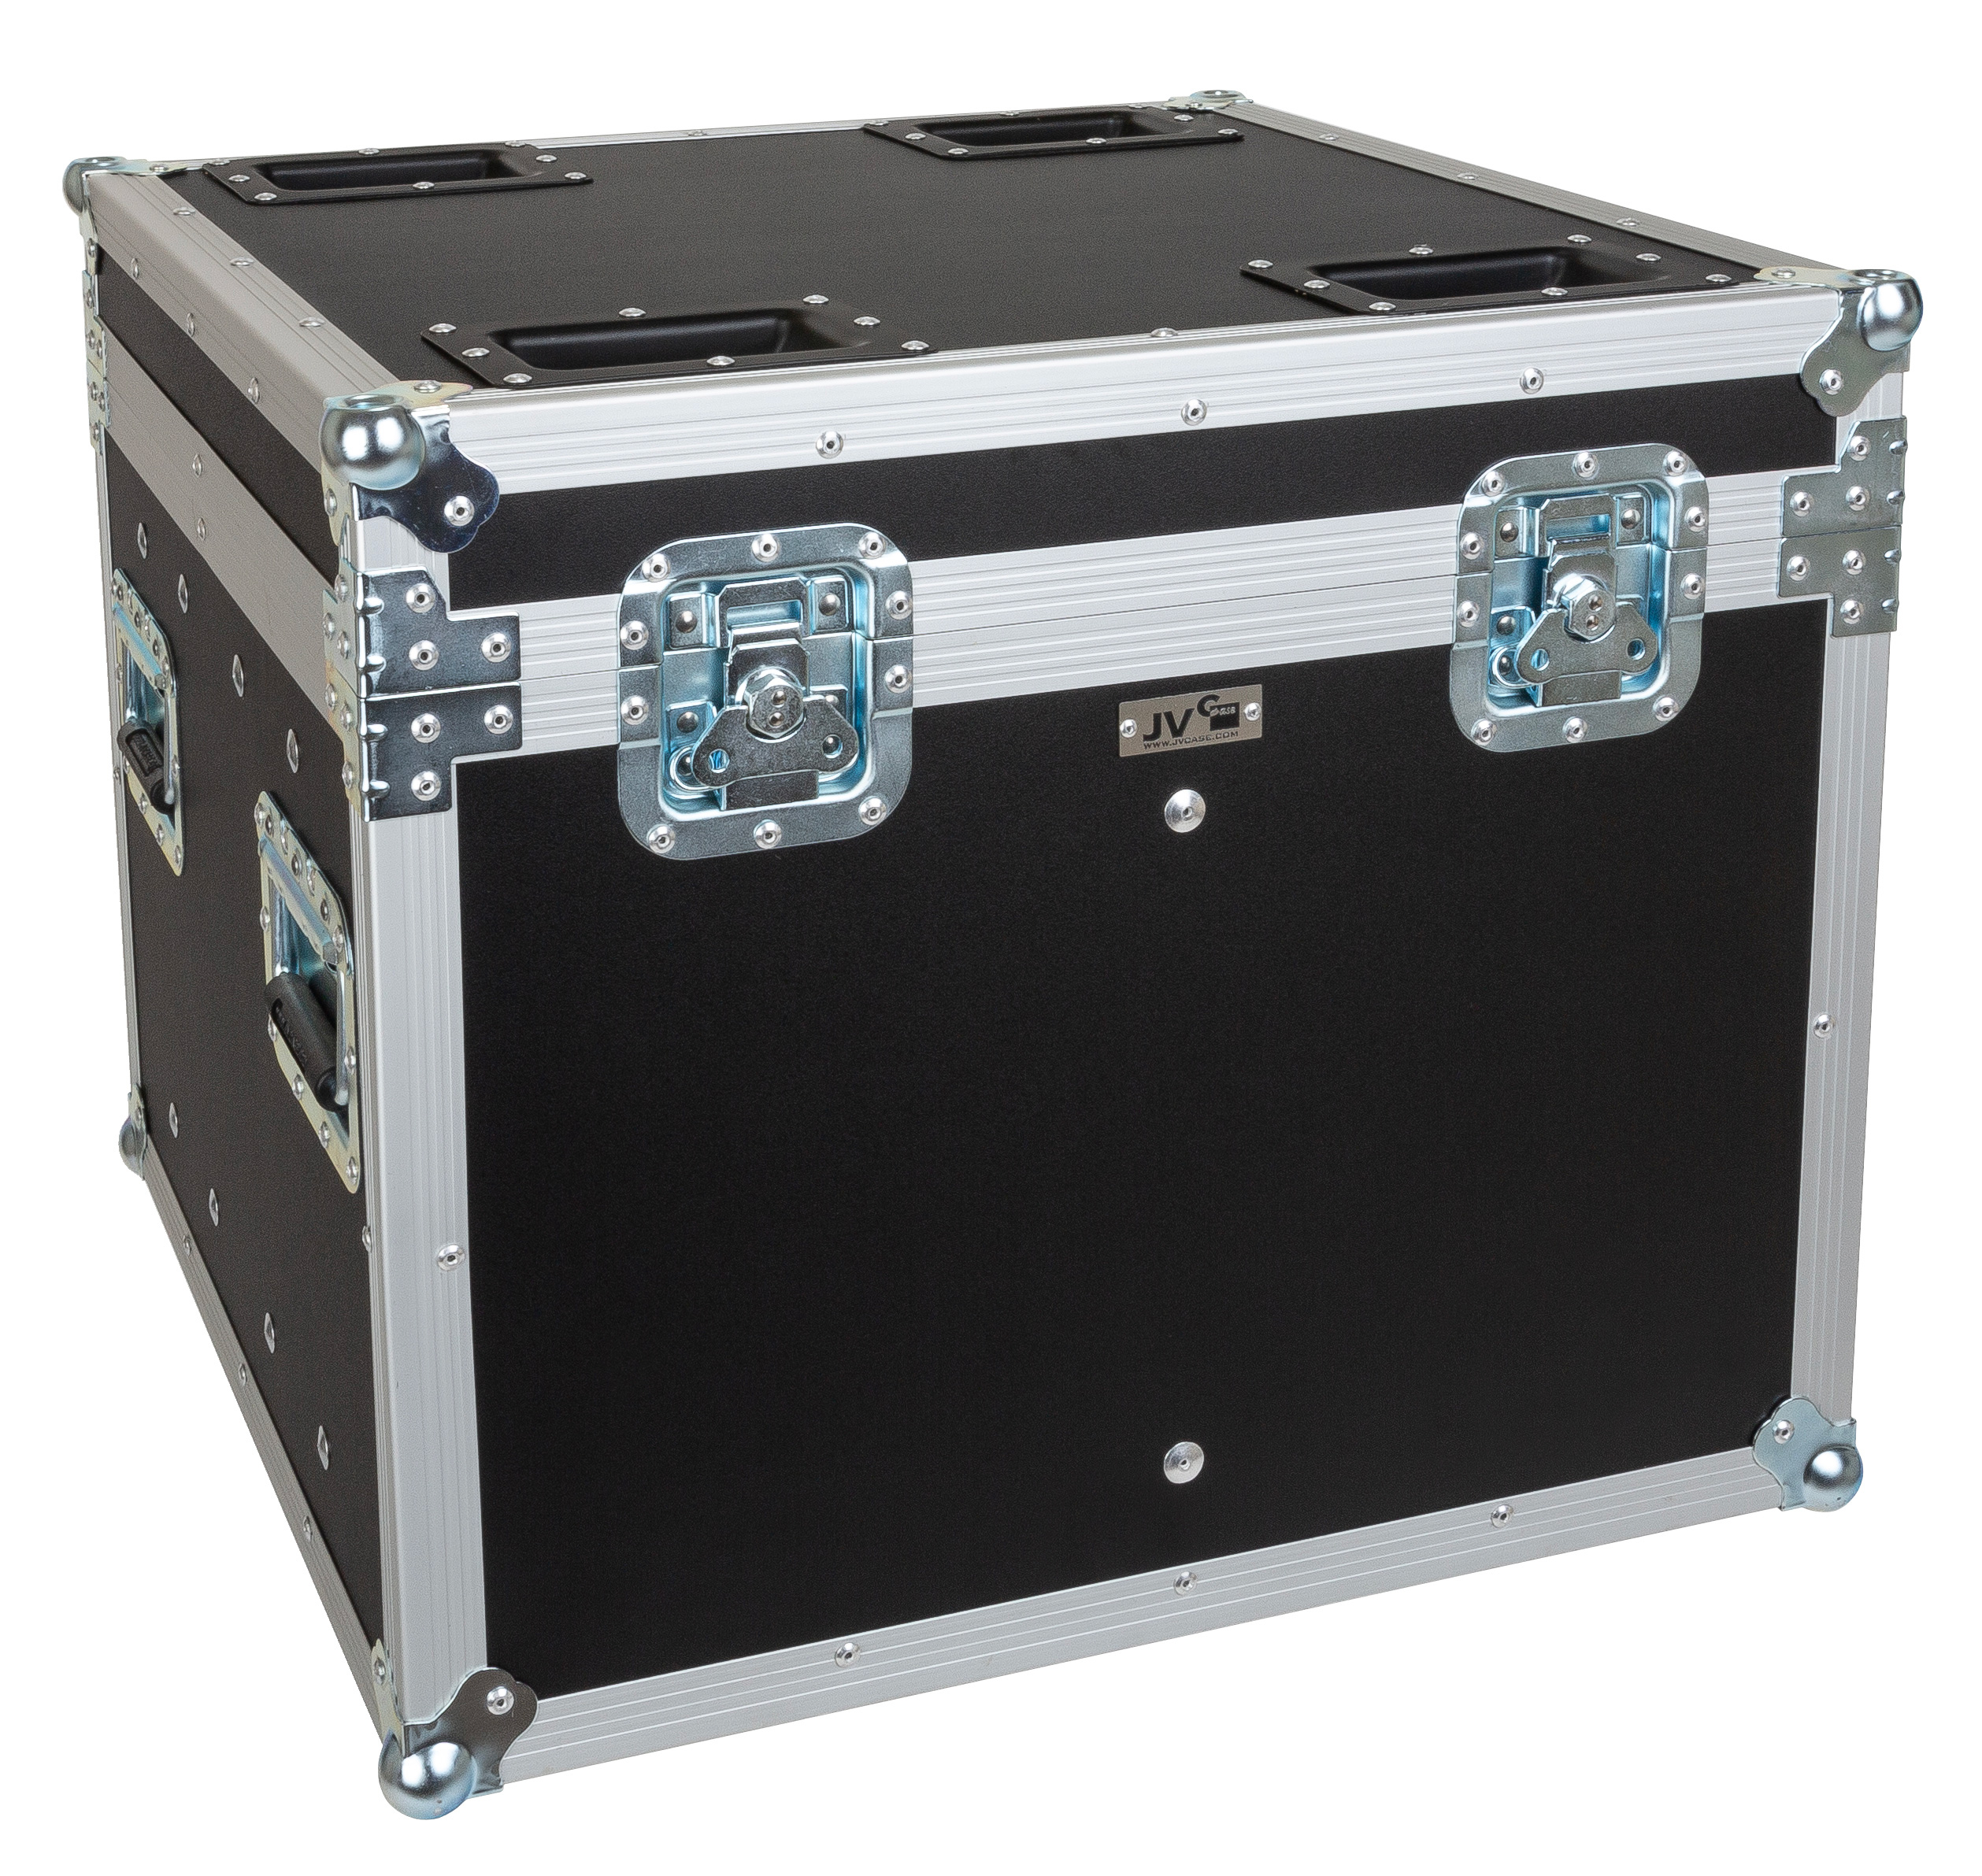 Stackable flight case, designed to transport 4pieces of EXPLORER SPOT or INTRUDER